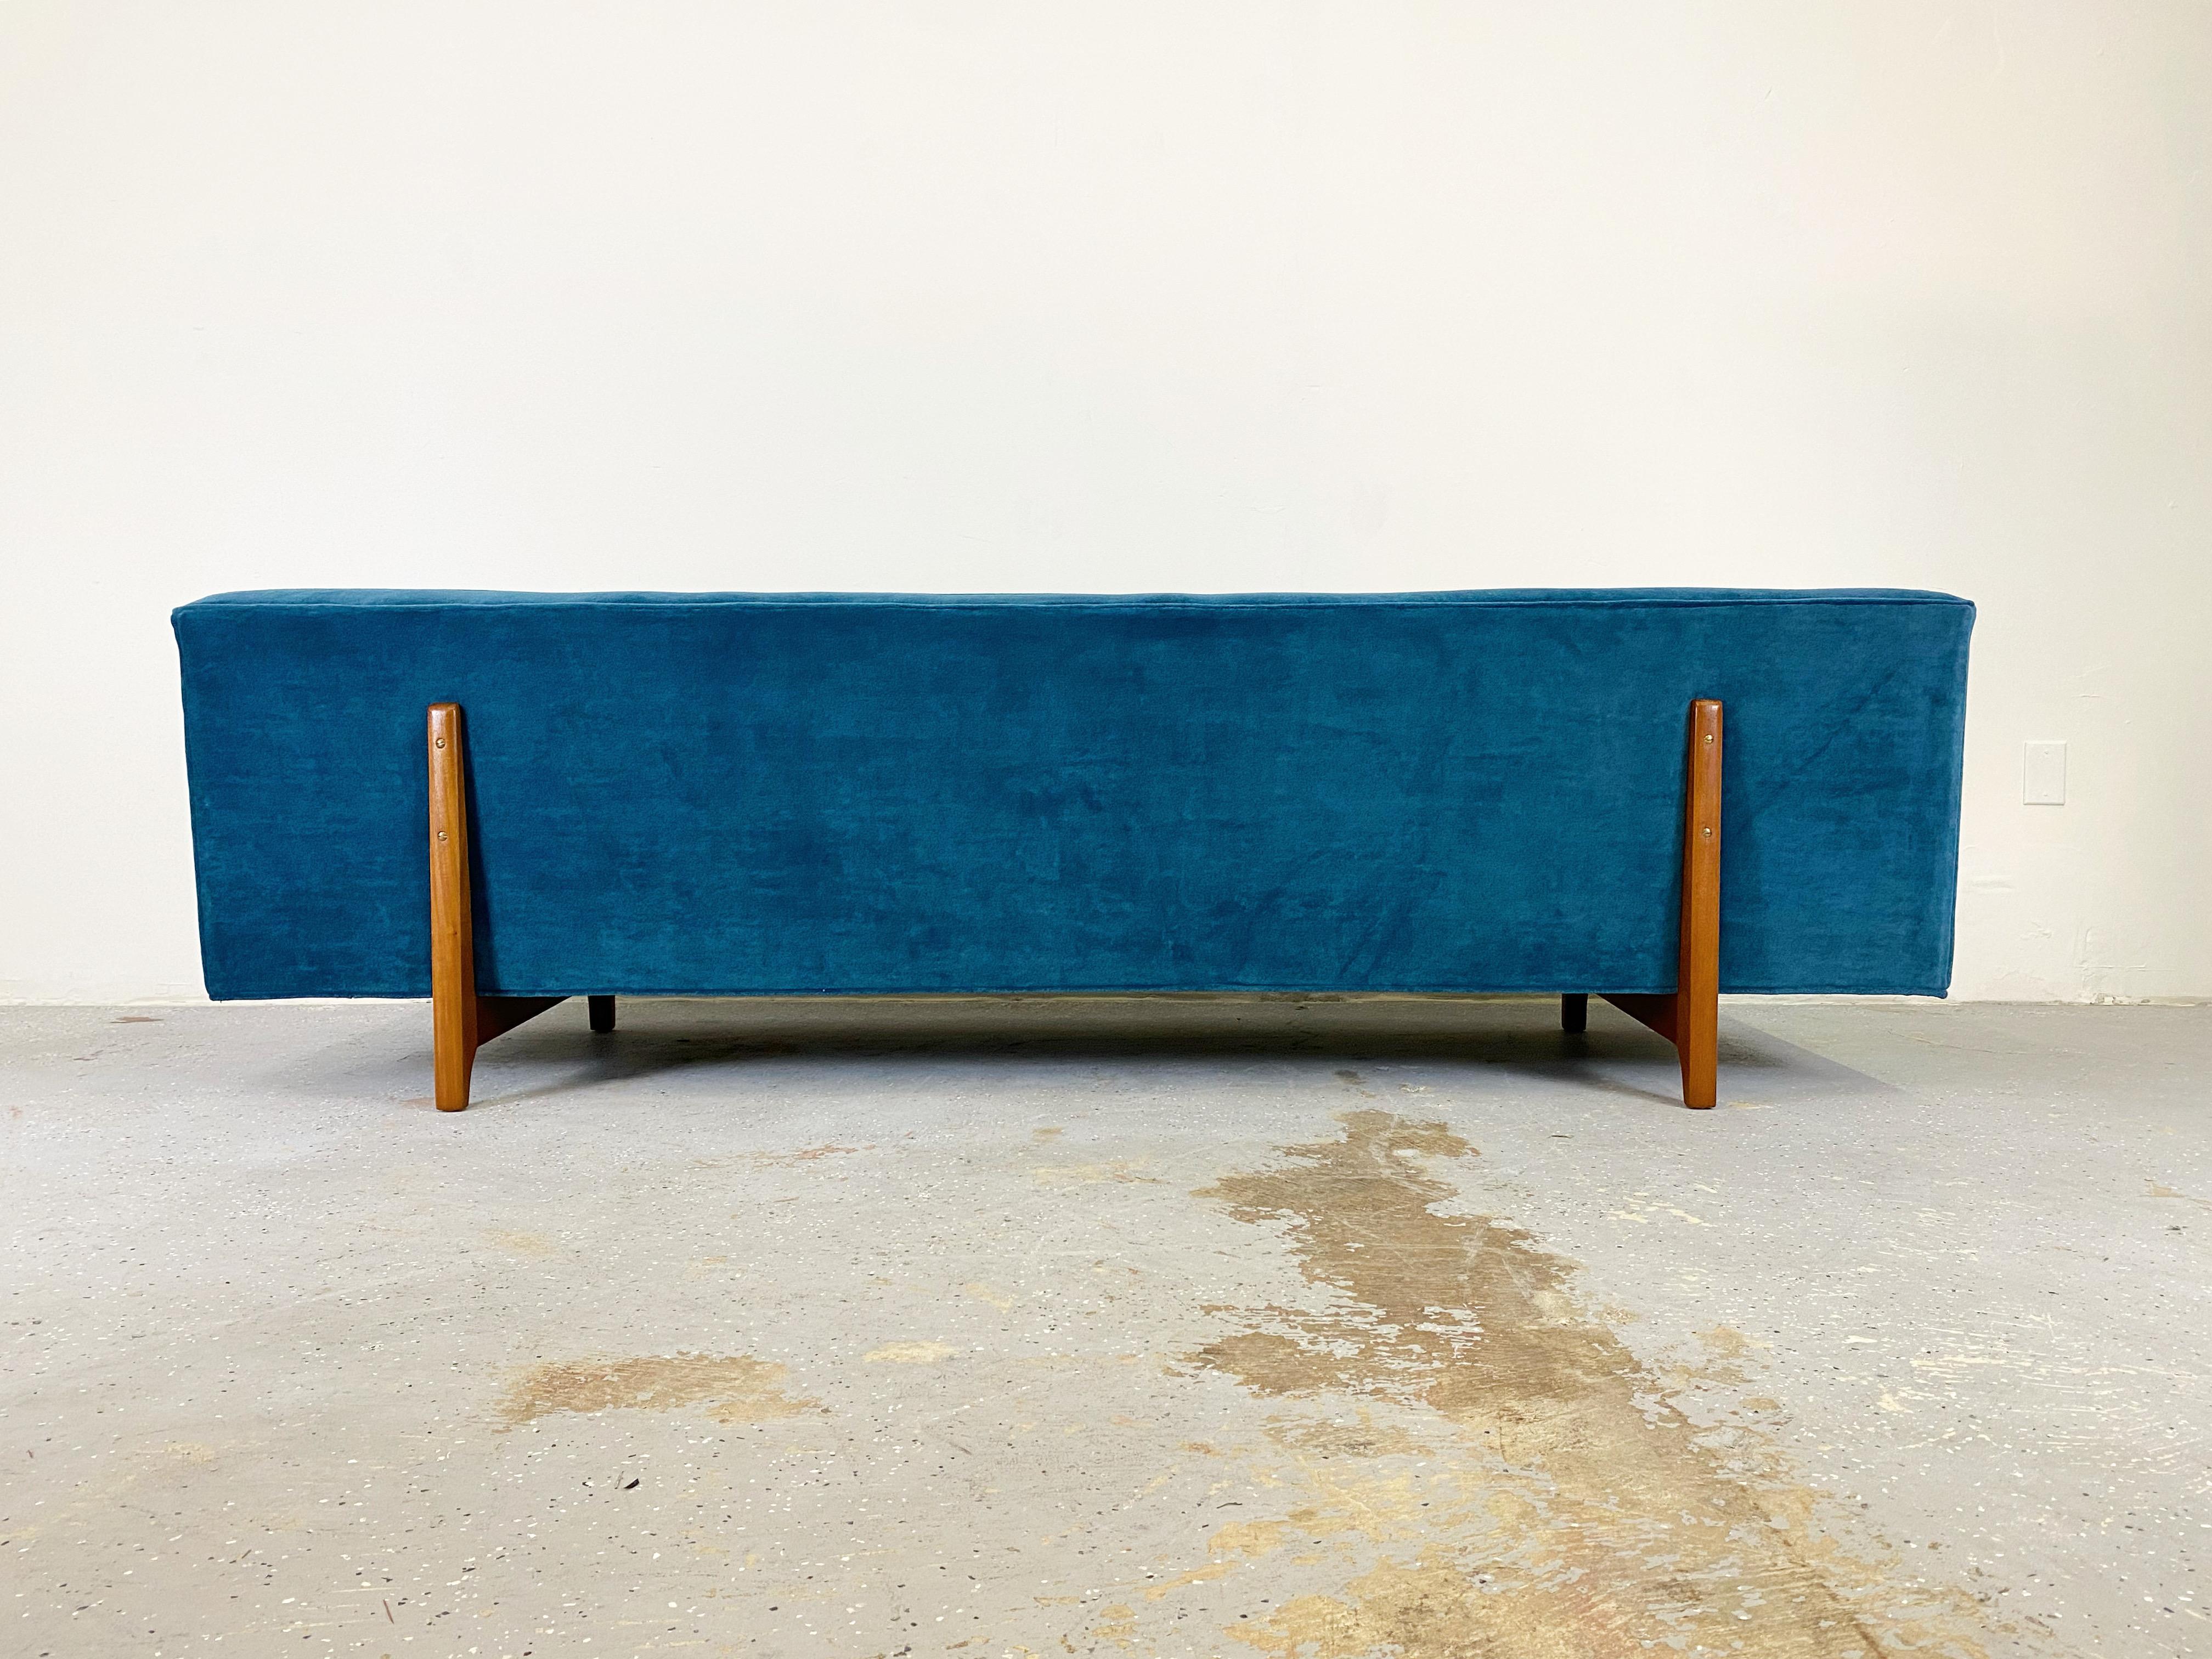 Klassisches Sofa mit Bügelrücken von Edward Wormley, hergestellt von Dunbar. Neu gepolstert mit Mohair-Samt und neuem Schaumstoff.